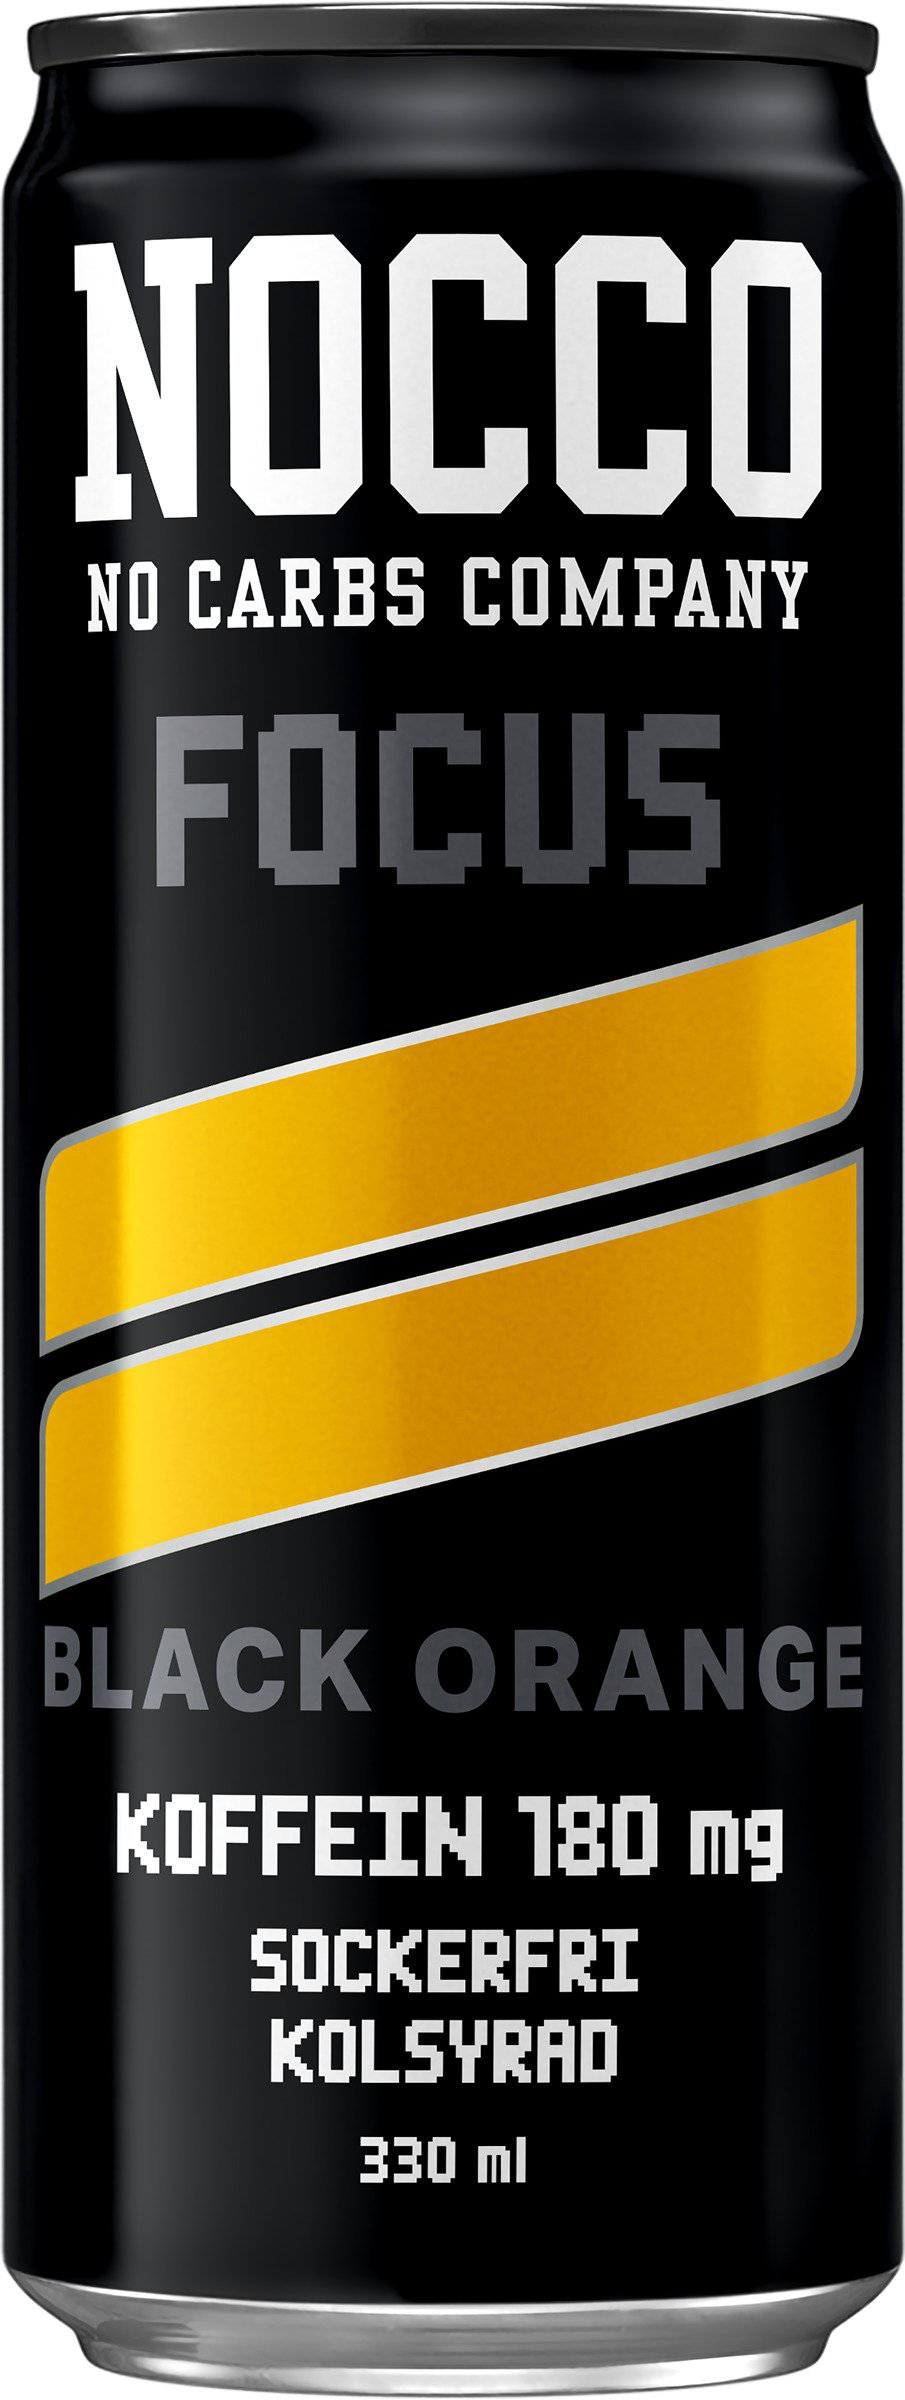 Nocco Focus Black Orange 330 ml